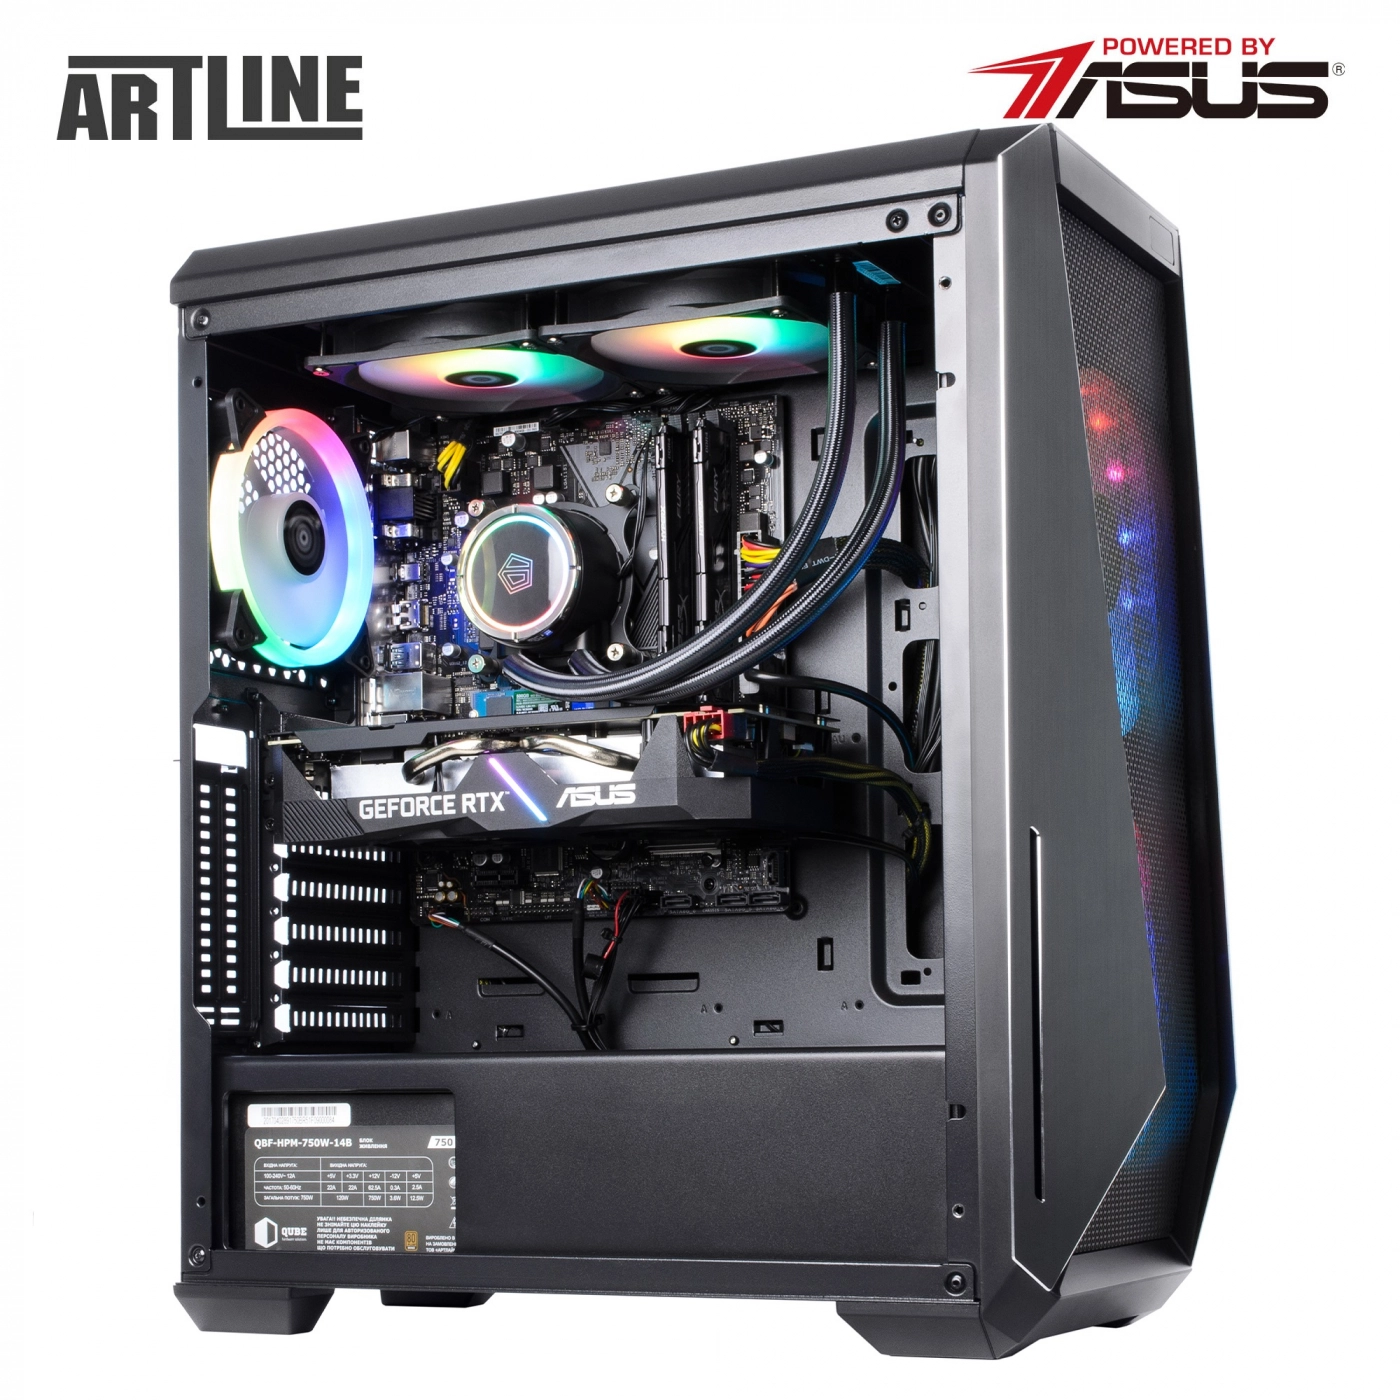 Купить Компьютер ARTLINE Gaming X85v26 - фото 10